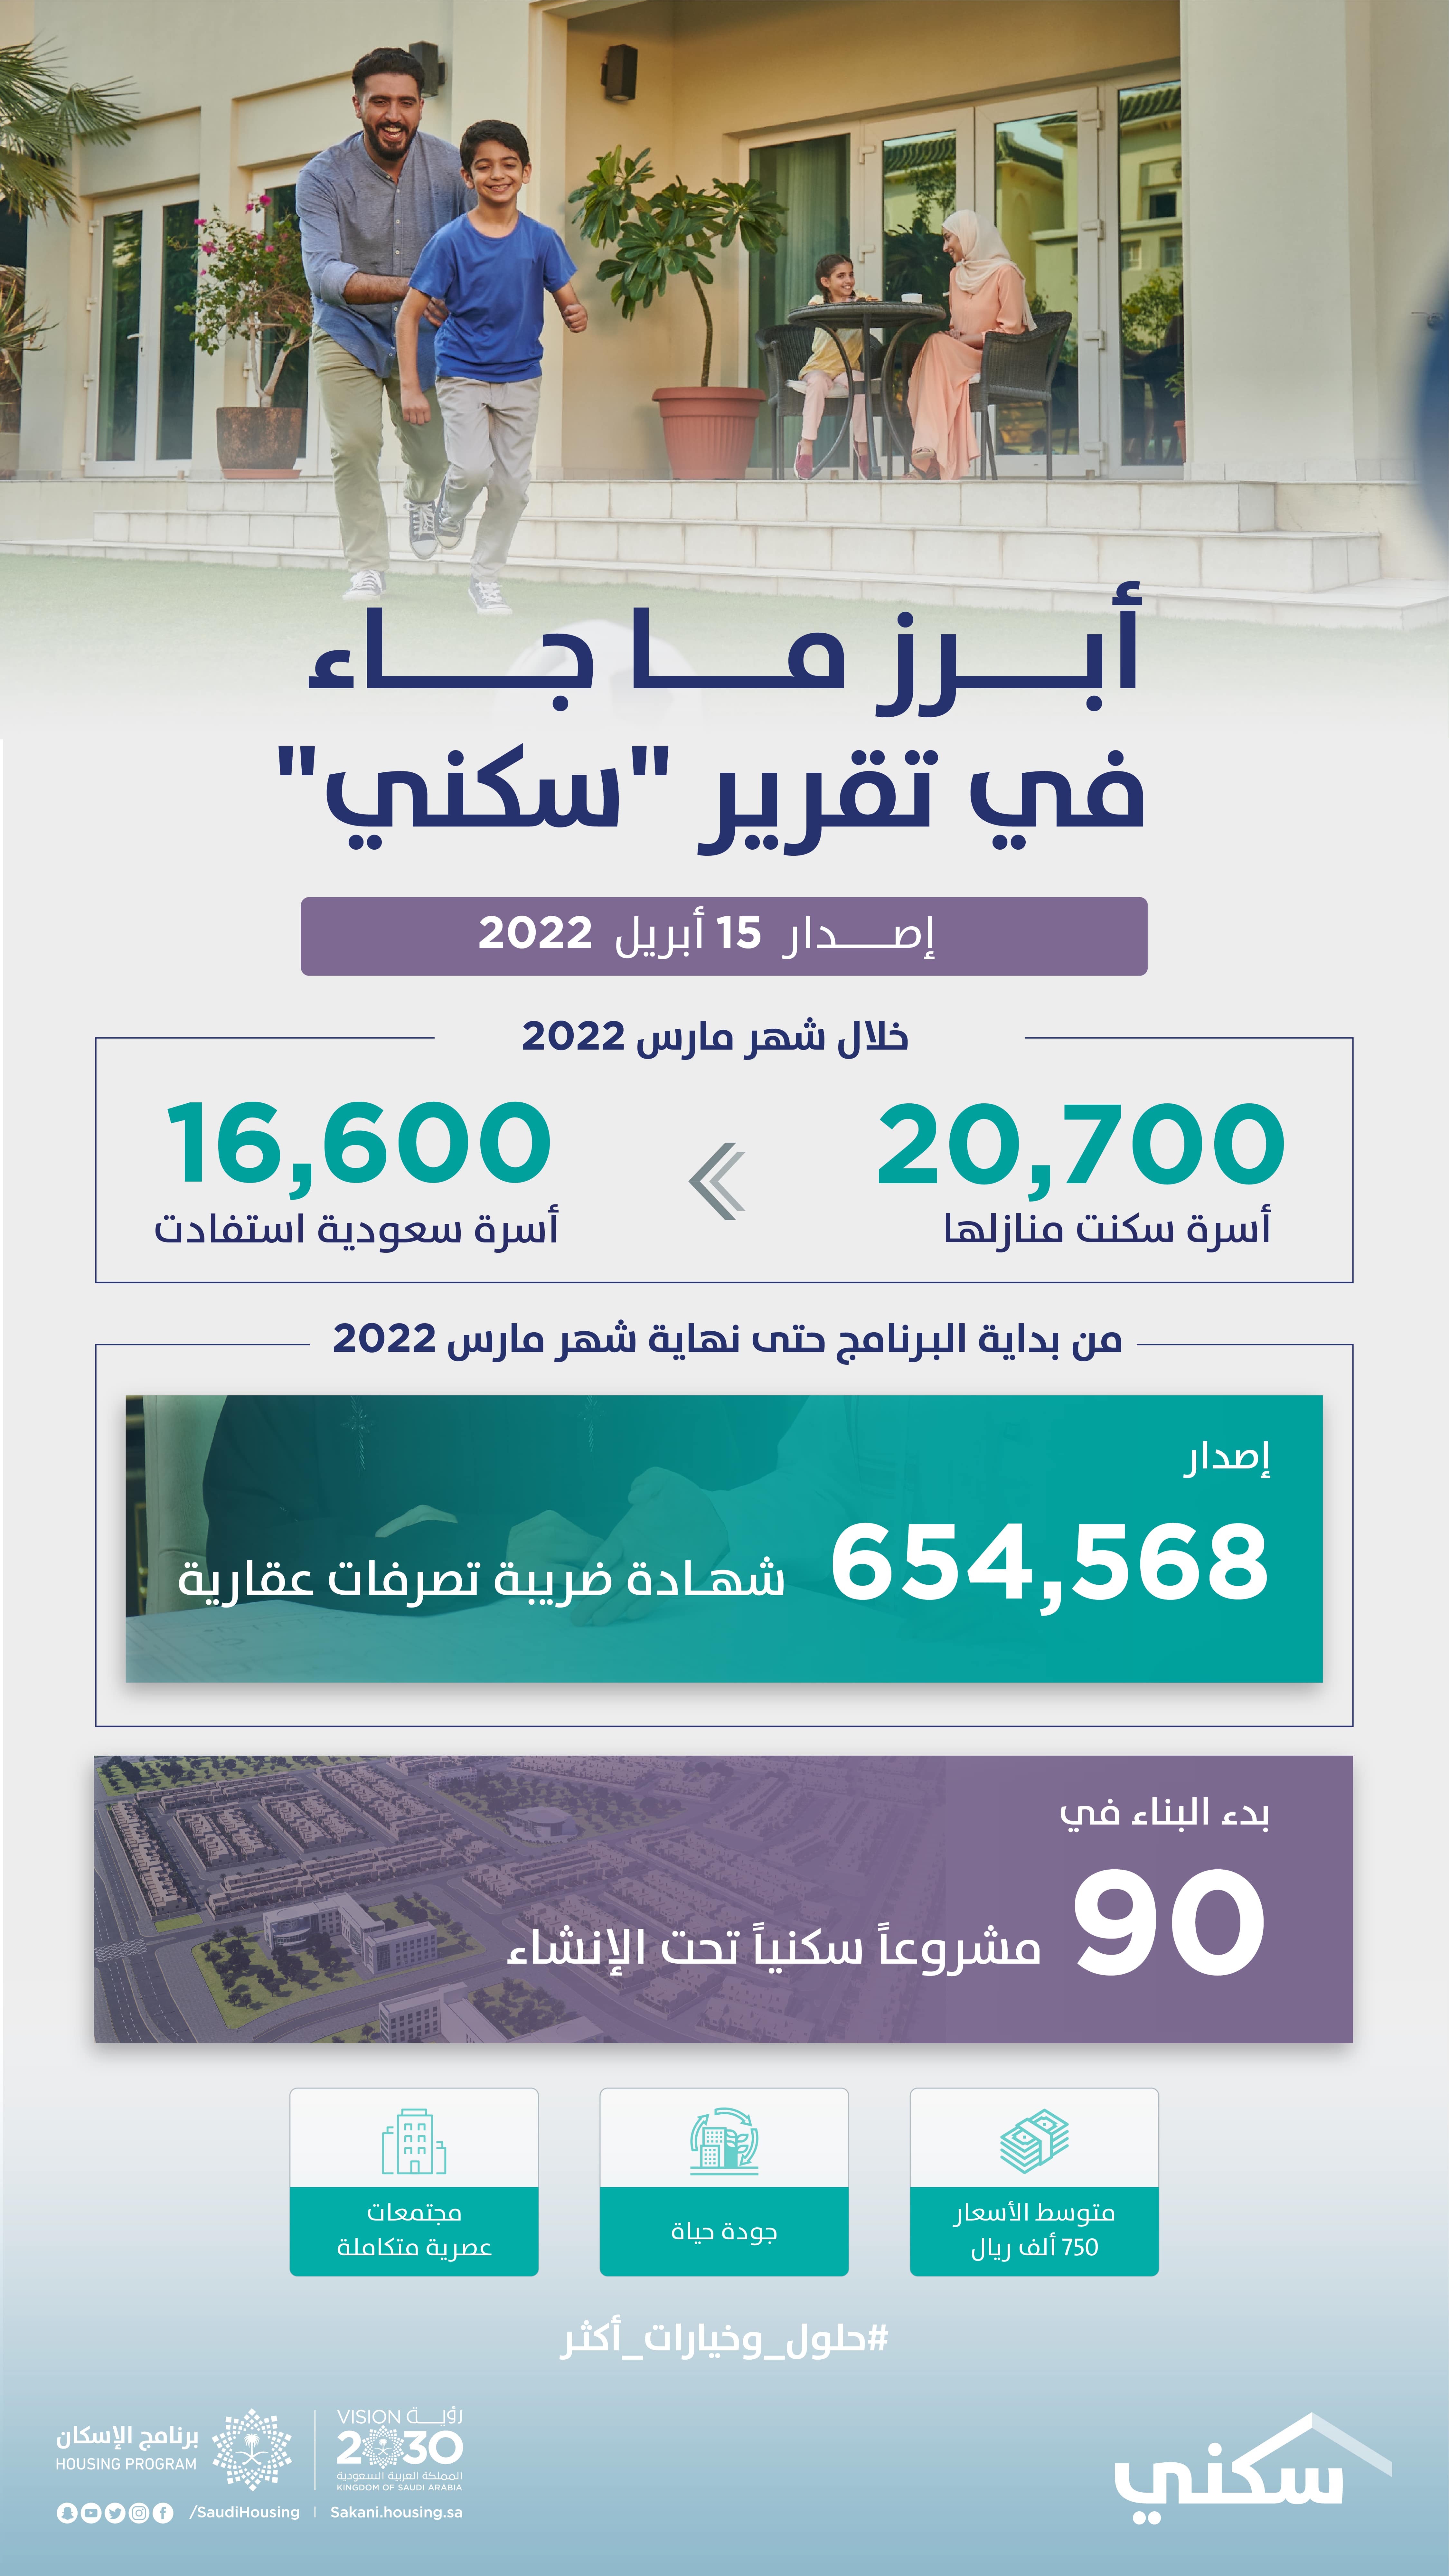 تقرير "سكني": أكثر من 20 ألف أسرة سكنت منازلها خلال شهر مارس 2022